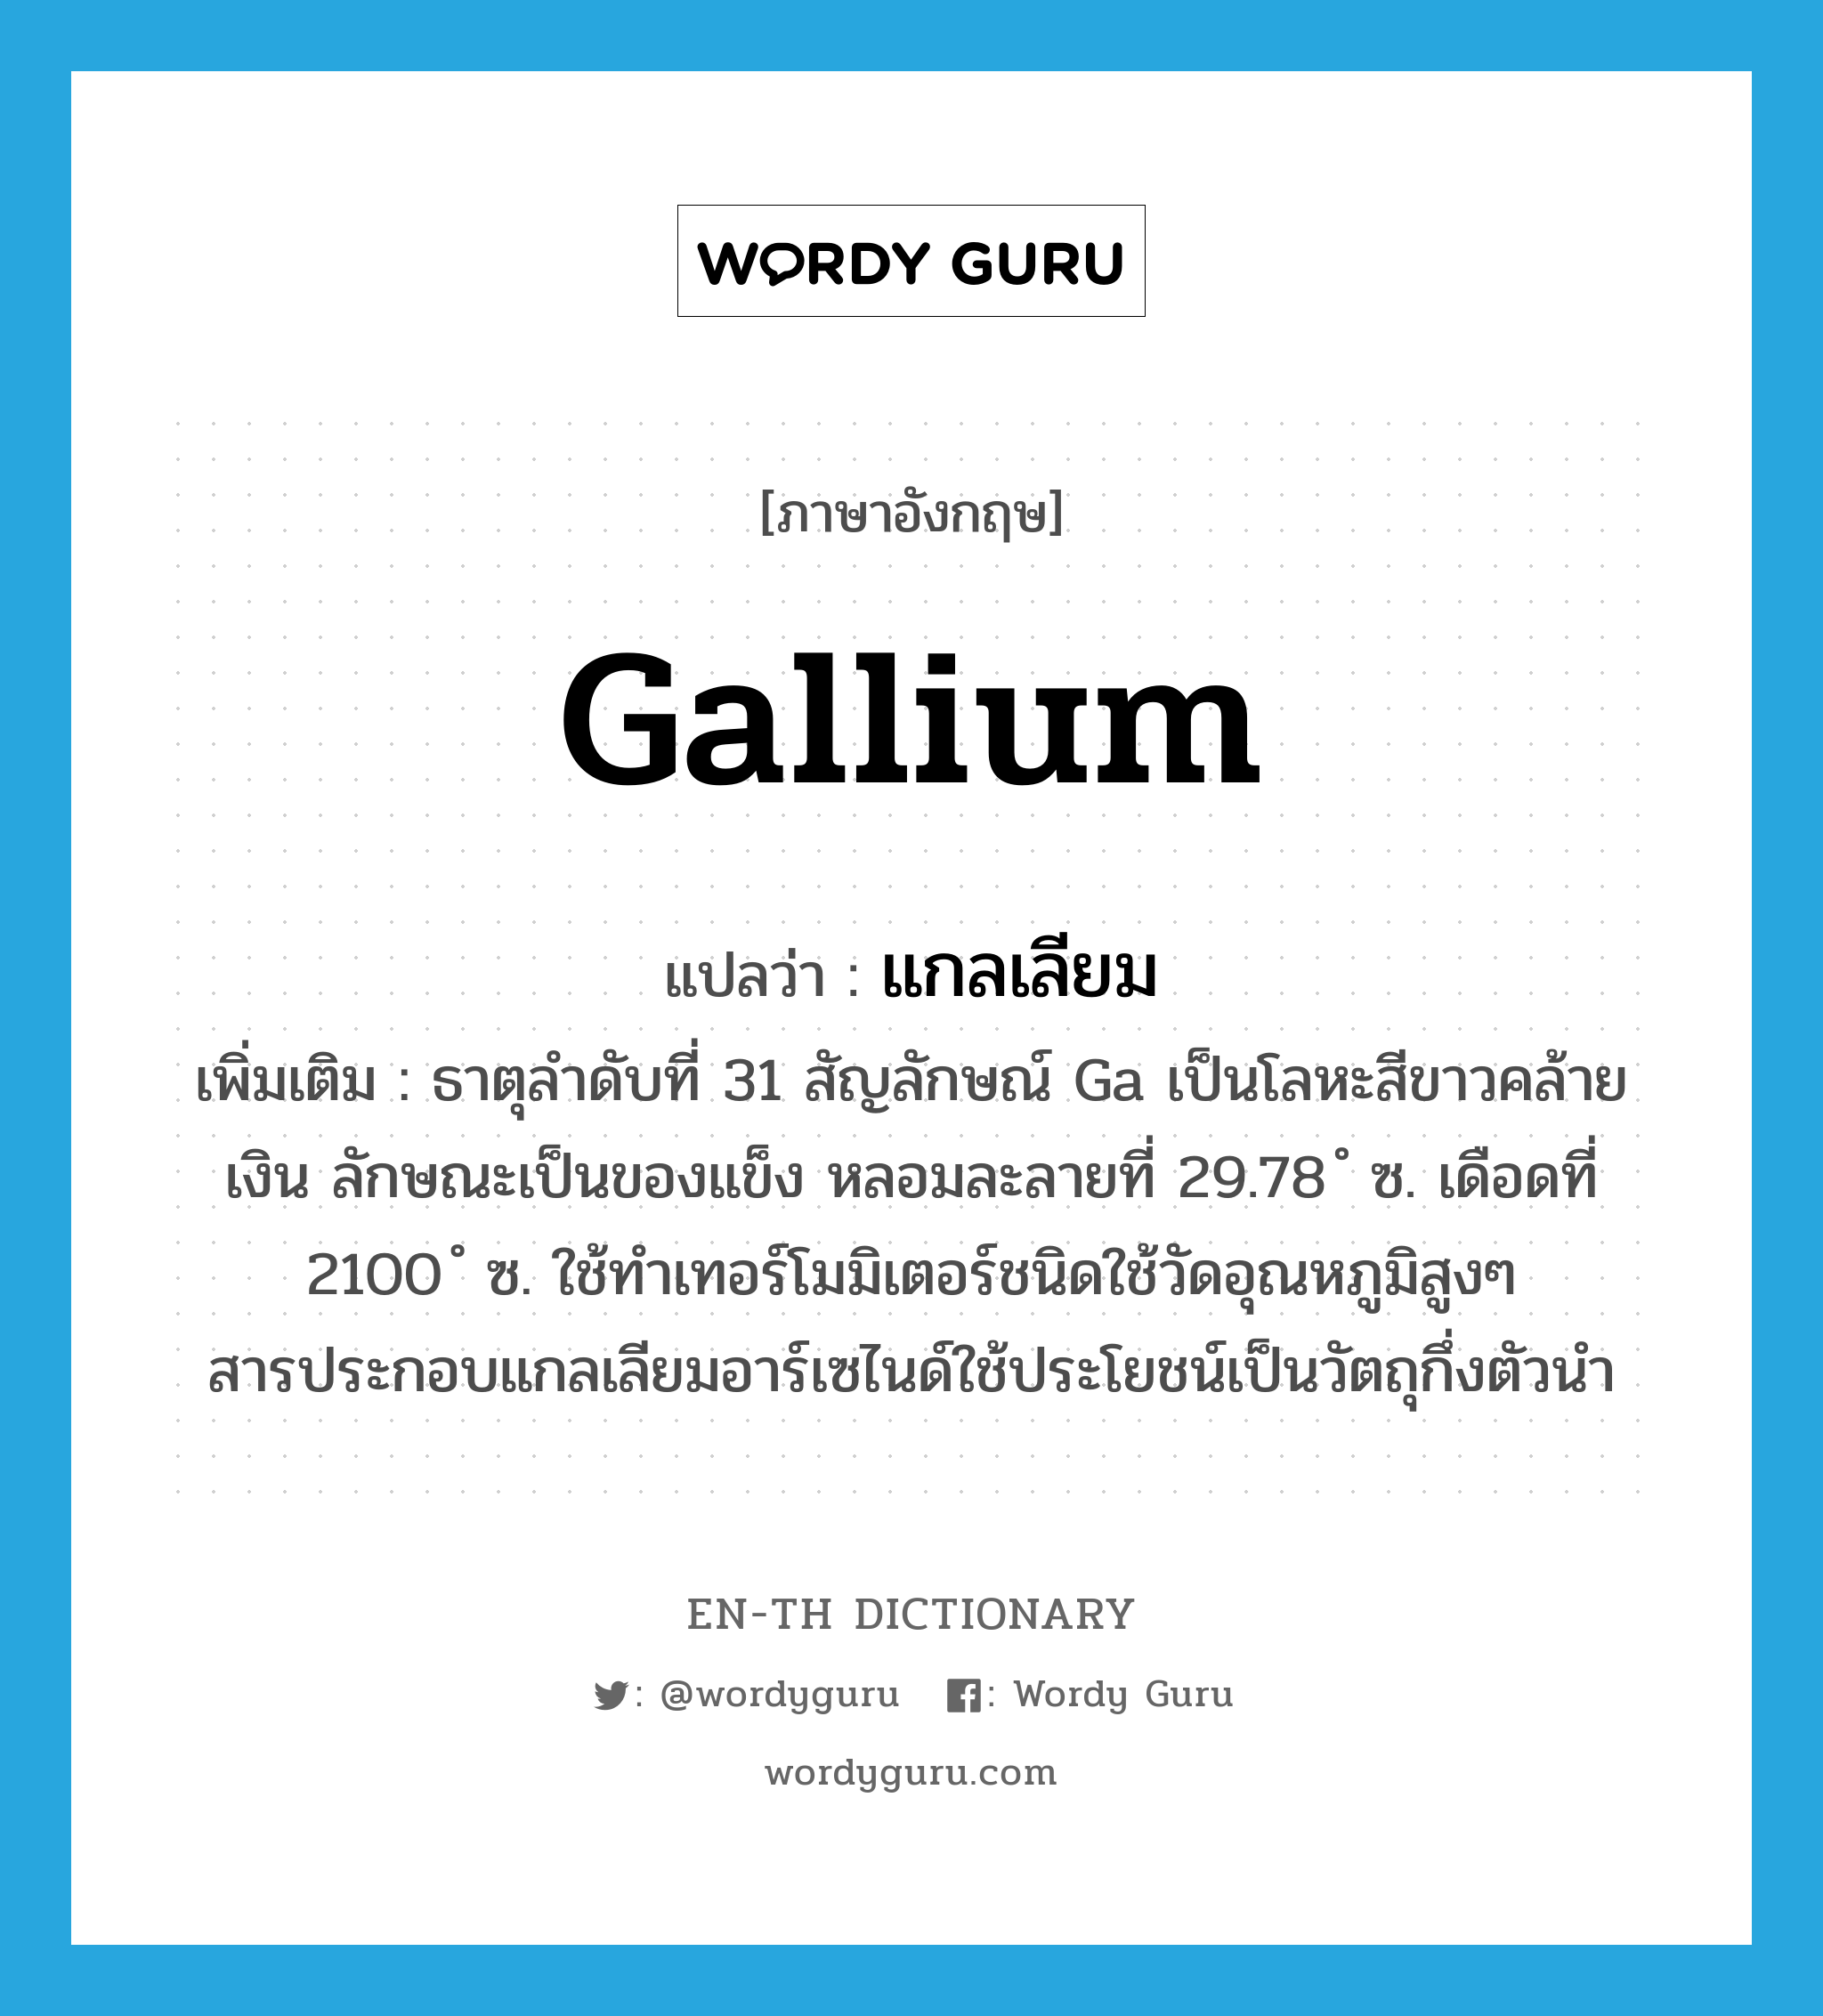 แกลเลียม ภาษาอังกฤษ?, คำศัพท์ภาษาอังกฤษ แกลเลียม แปลว่า gallium ประเภท N เพิ่มเติม ธาตุลำดับที่ 31 สัญลักษณ์ Ga เป็นโลหะสีขาวคล้ายเงิน ลักษณะเป็นของแข็ง หลอมละลายที่ 29.78 ํ ซ. เดือดที่ 2100 ํ ซ. ใช้ทำเทอร์โมมิเตอร์ชนิดใช้วัดอุณหภูมิสูงๆ สารประกอบแกลเลียมอาร์เซไนด์ใช้ประโยชน์เป็นวัตถุกึ่งตัวนำ หมวด N